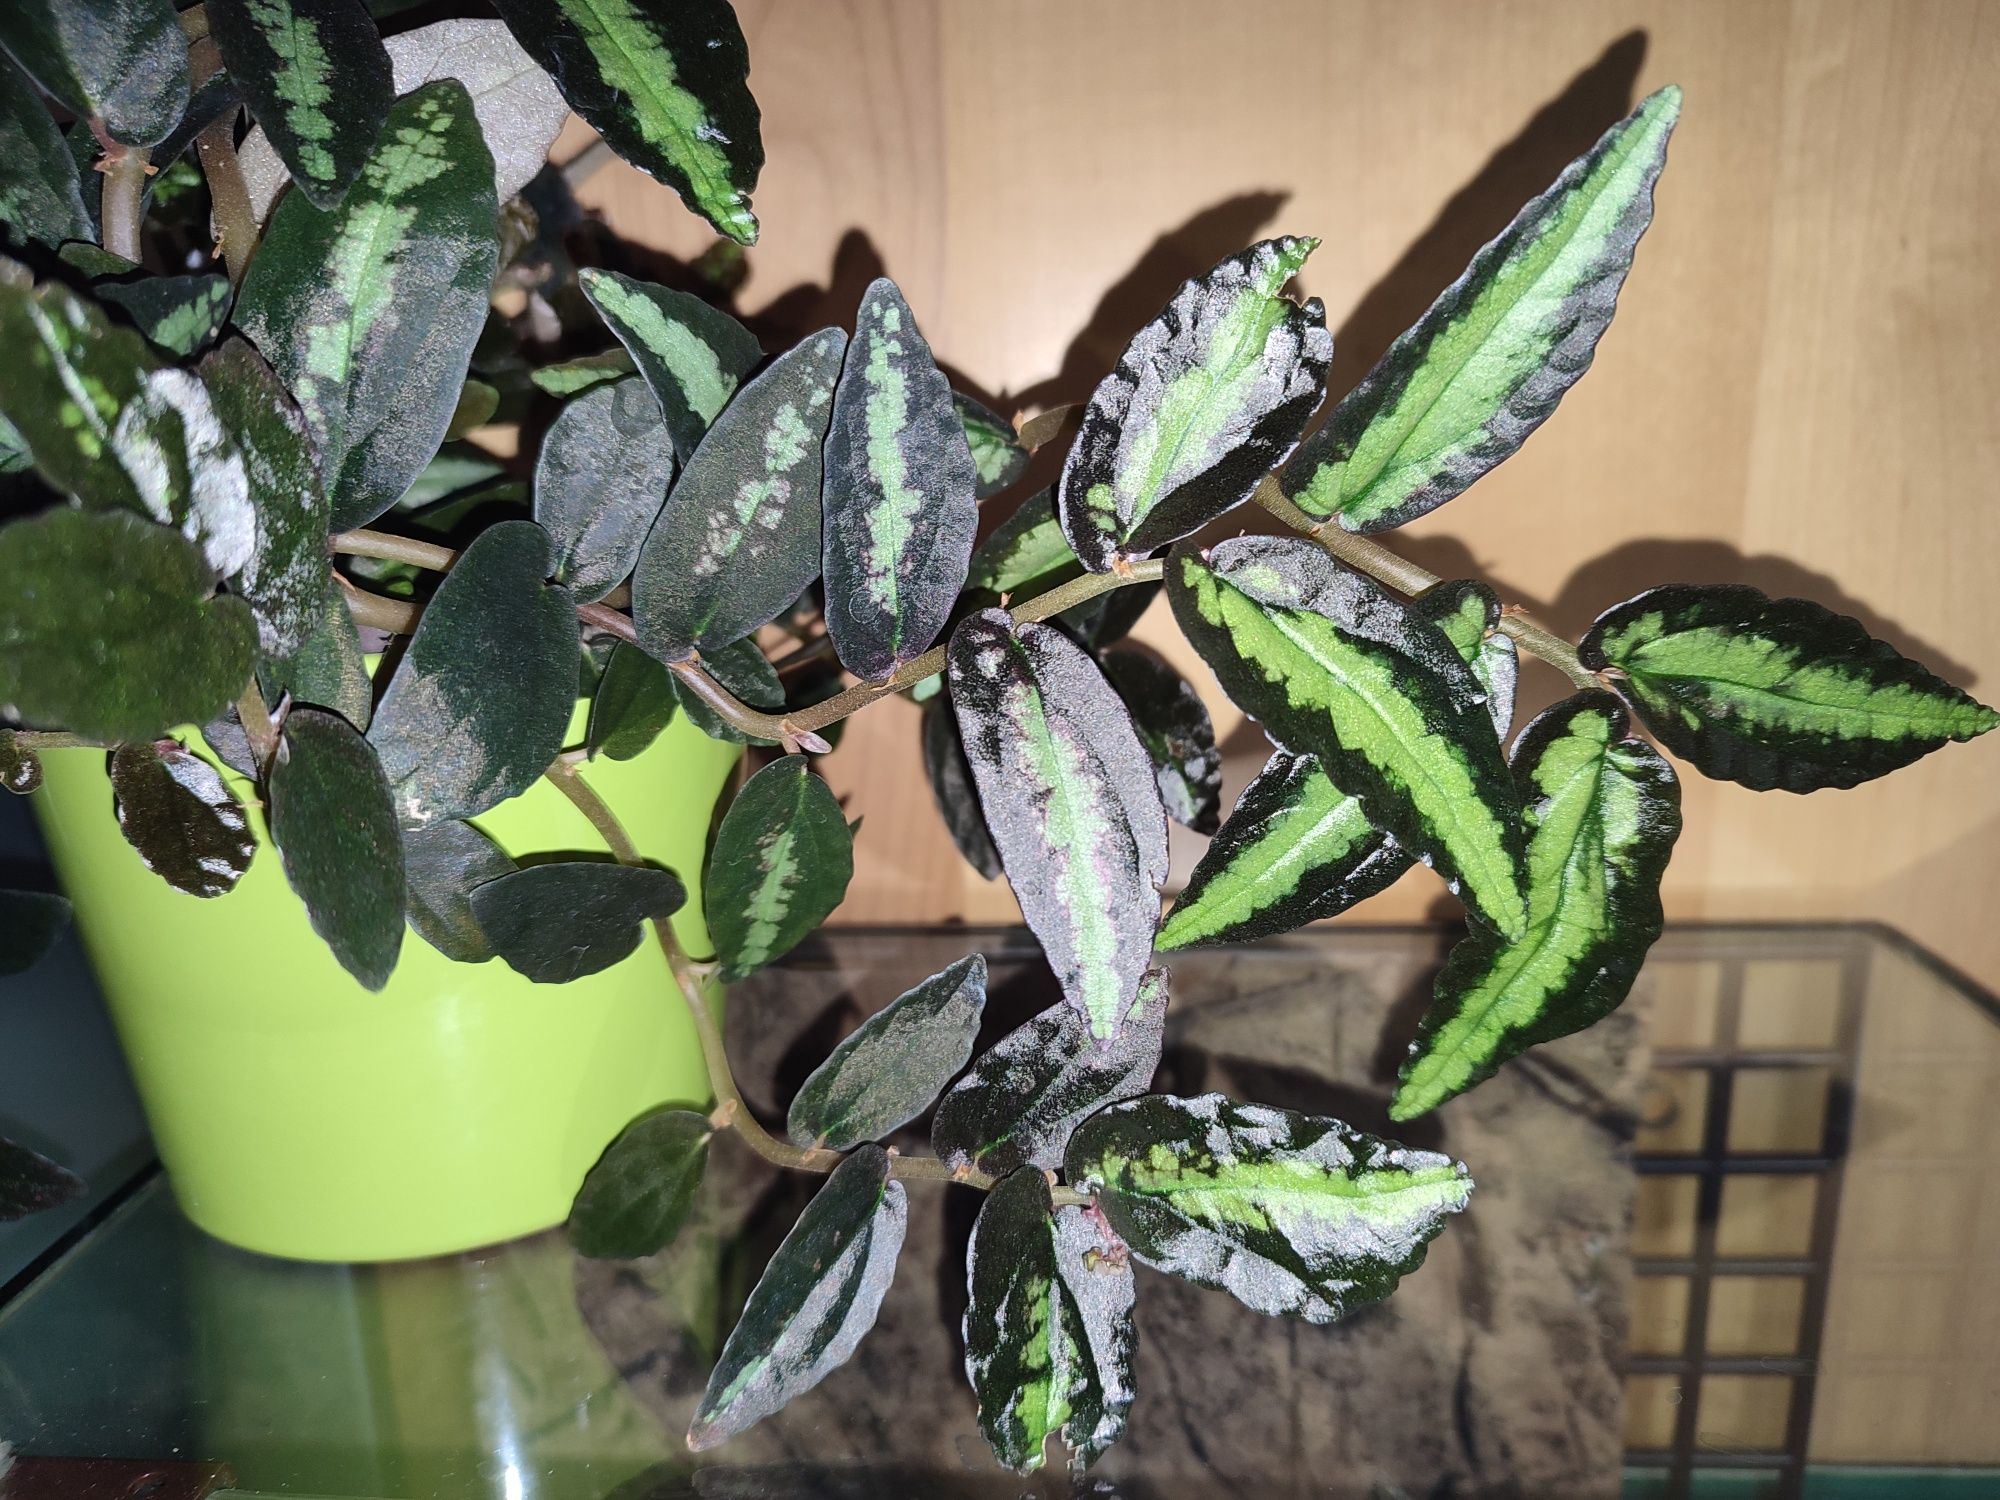 Pellionia repens & pulchra rośliny o barwnych lisciach do terrarium